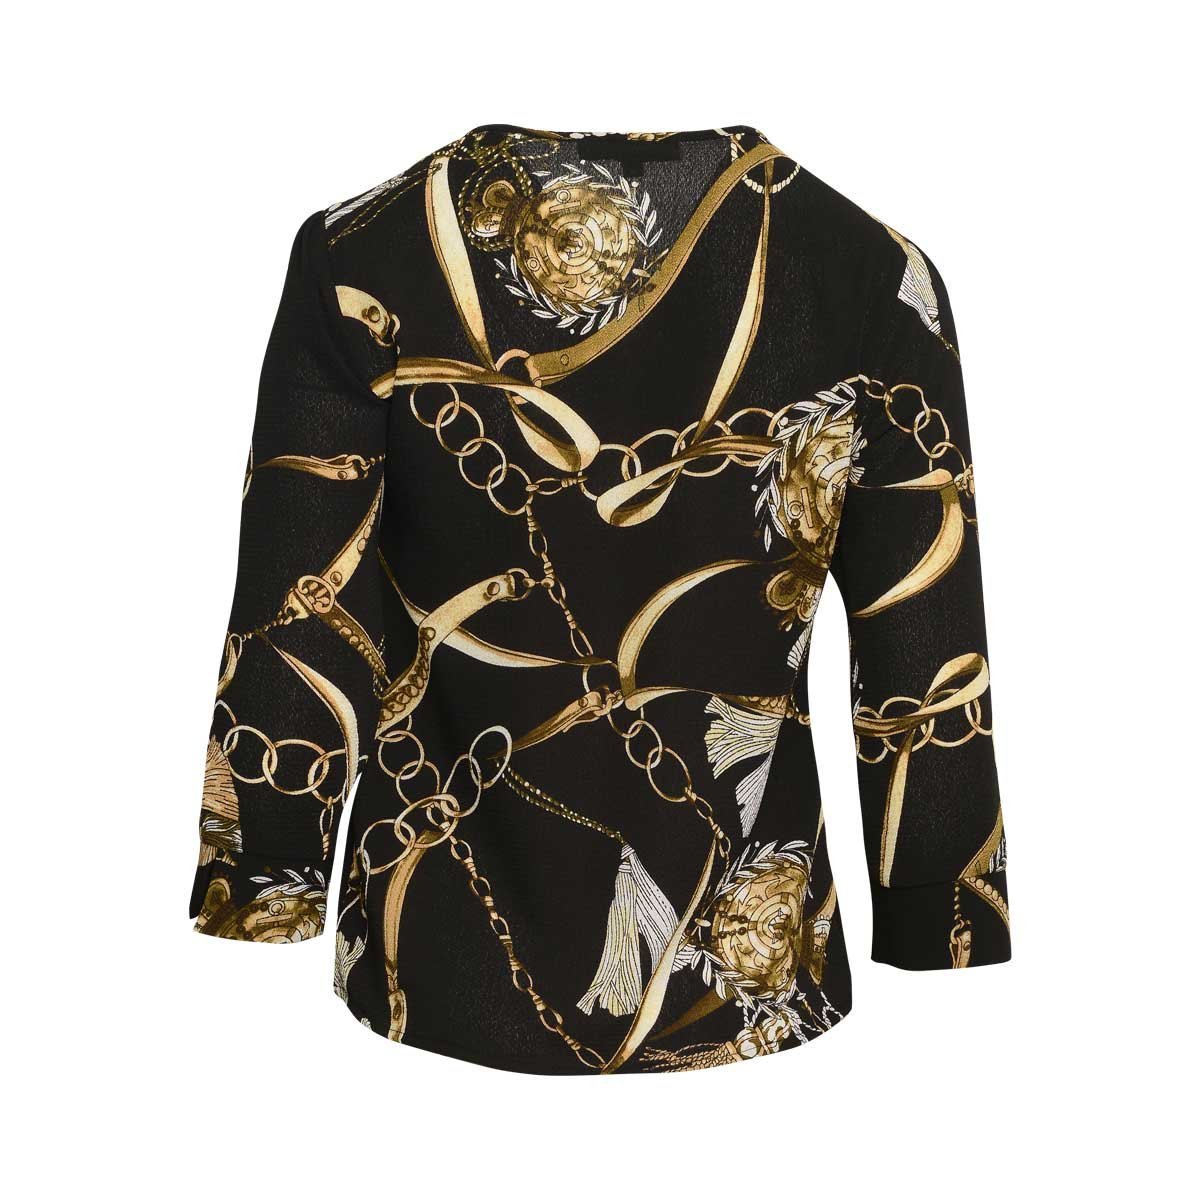 Blusa para Dama con Diseño de Corona Ann Miller